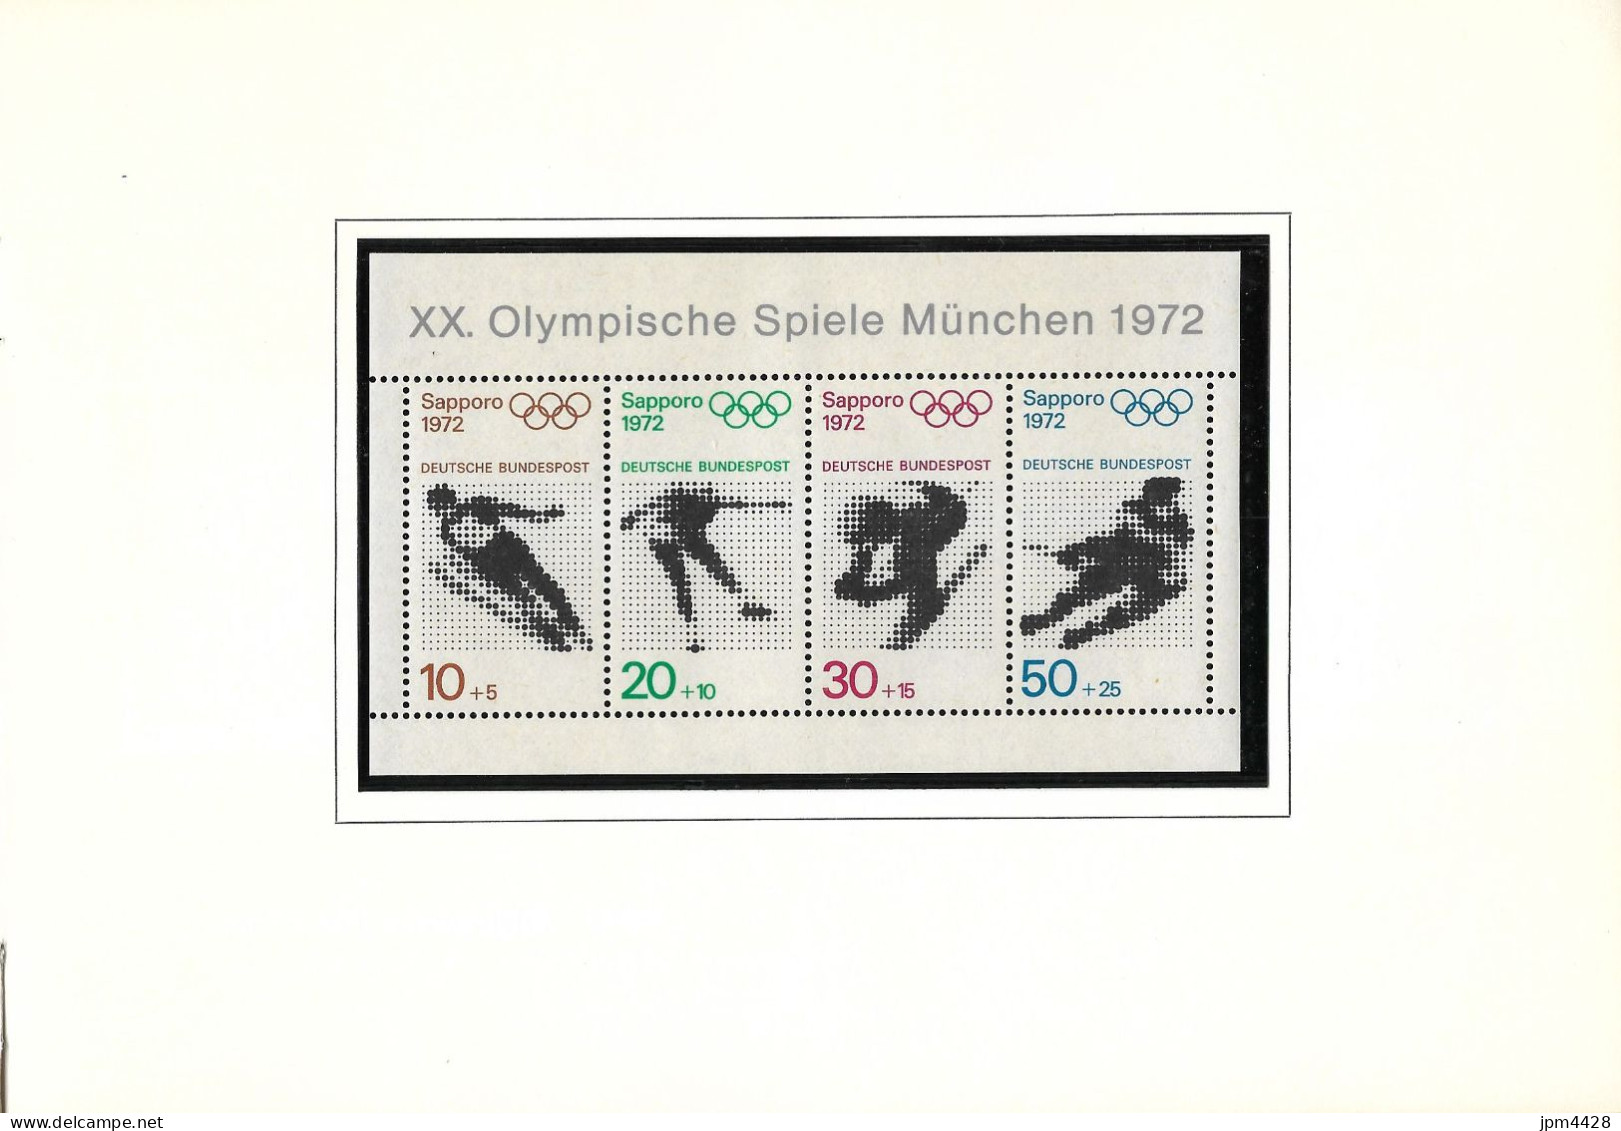 Allemagne  Facicule Jeux Olympiques 1968-1972 - 21 timbres et 3 bloc neufs ** - 12 feuilles